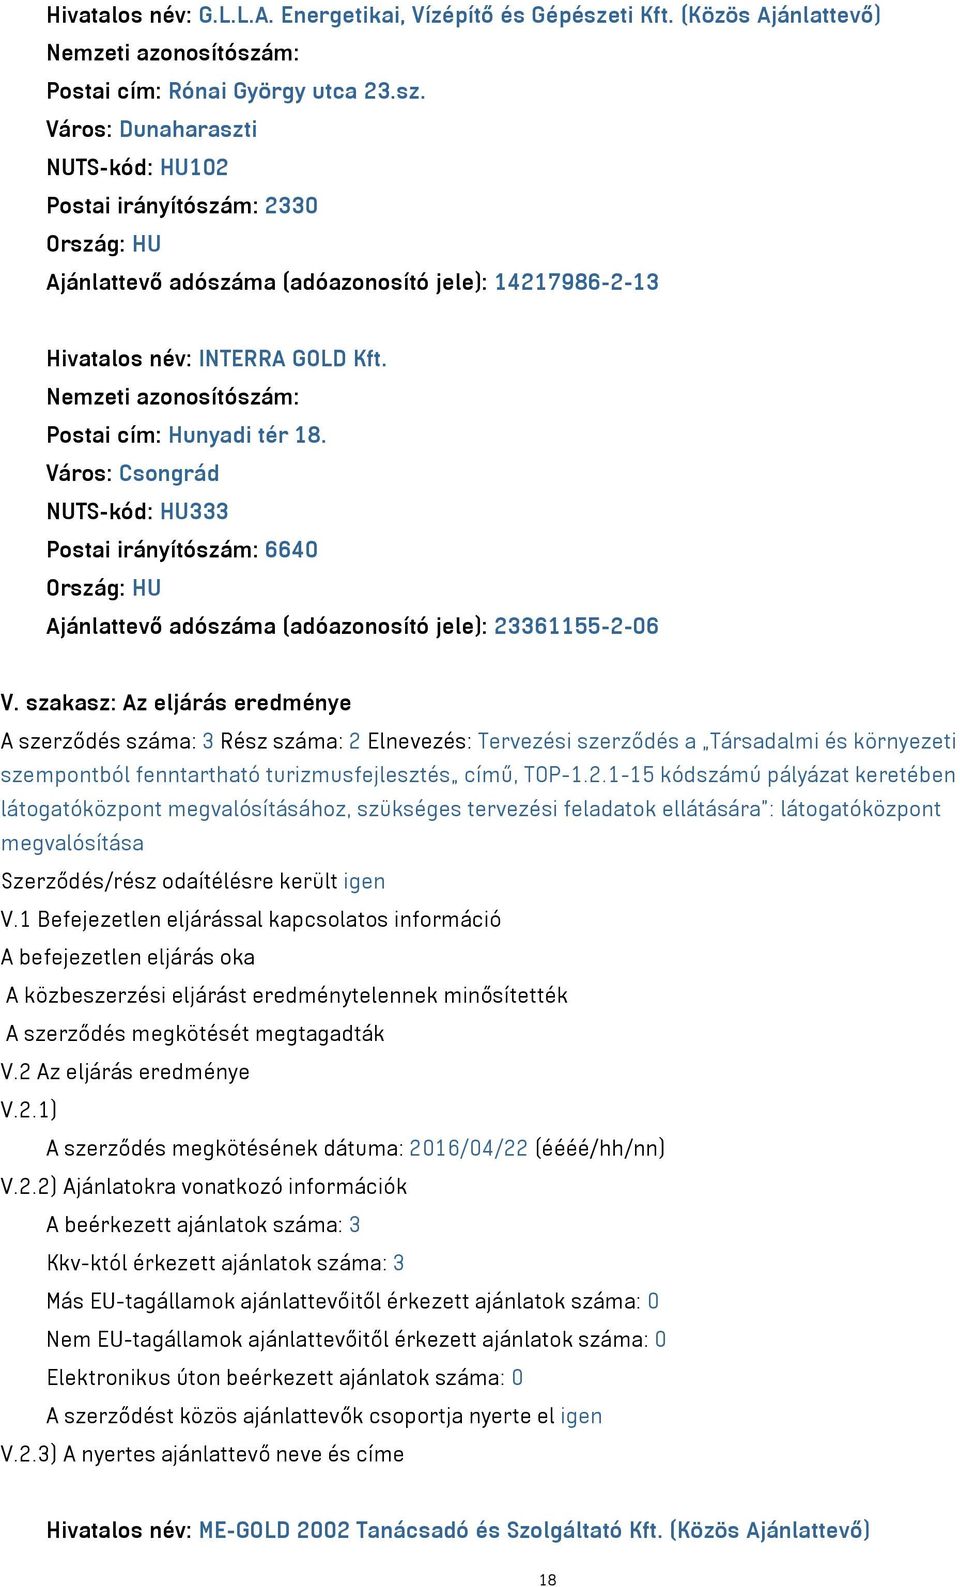 Város: Dunaharaszti NUTS-kód: HU102 Postai irányítószám: 2330 Ajánlattevő adószáma (adóazonosító jele): 14217986-2-13 Hivatalos név: INTERRA GOLD Kft. Postai cím: Hunyadi tér 18.